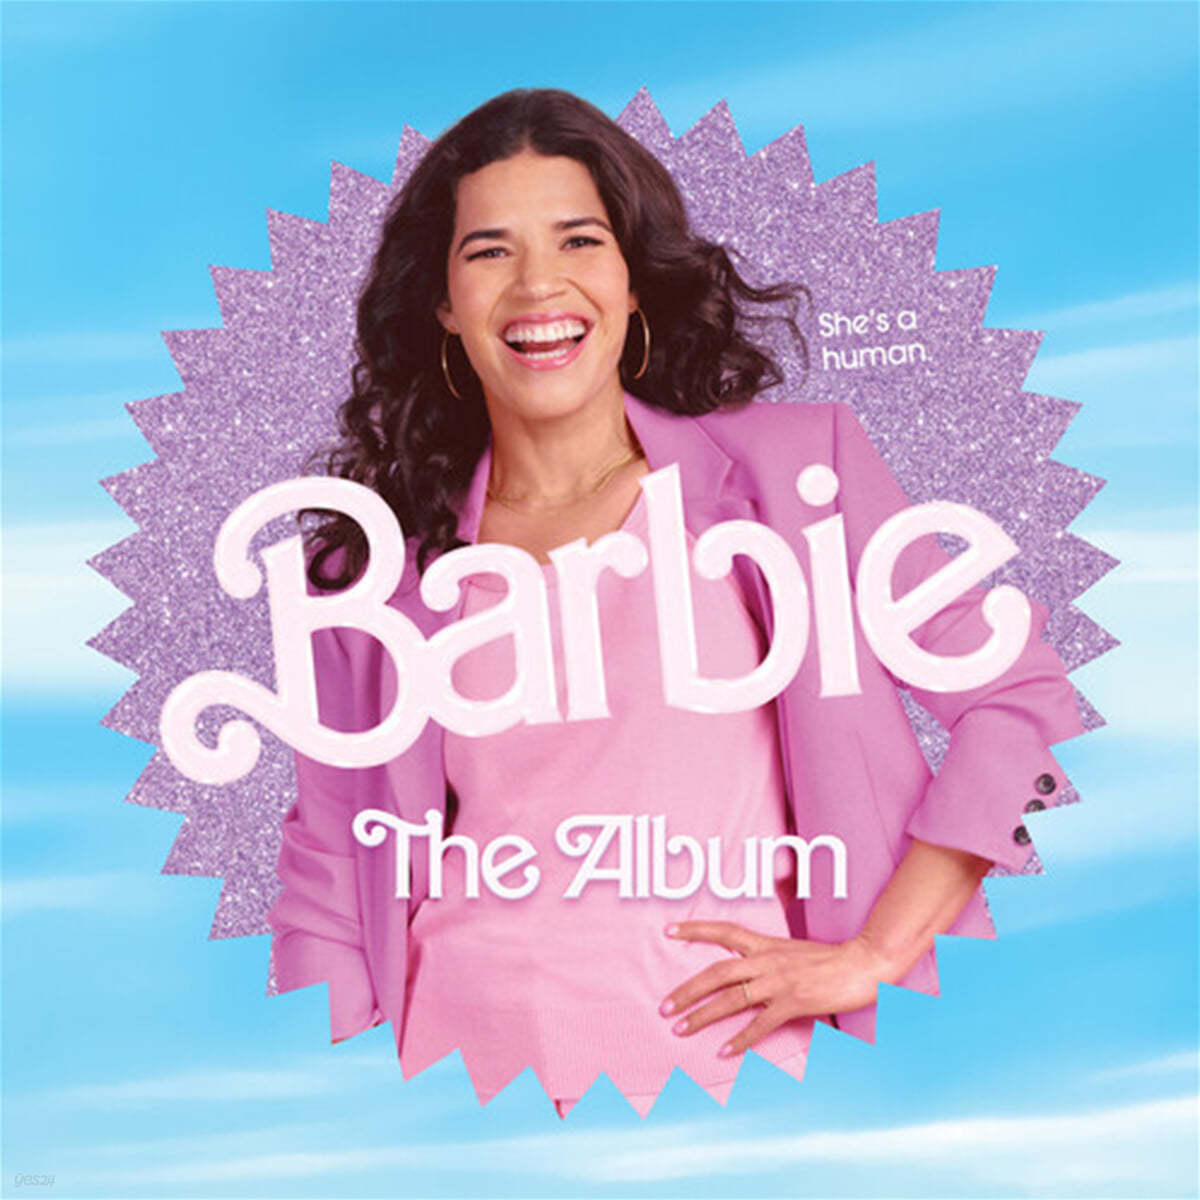 바비 영화음악 (Barbie The Album OST - America Ferrera edition) 